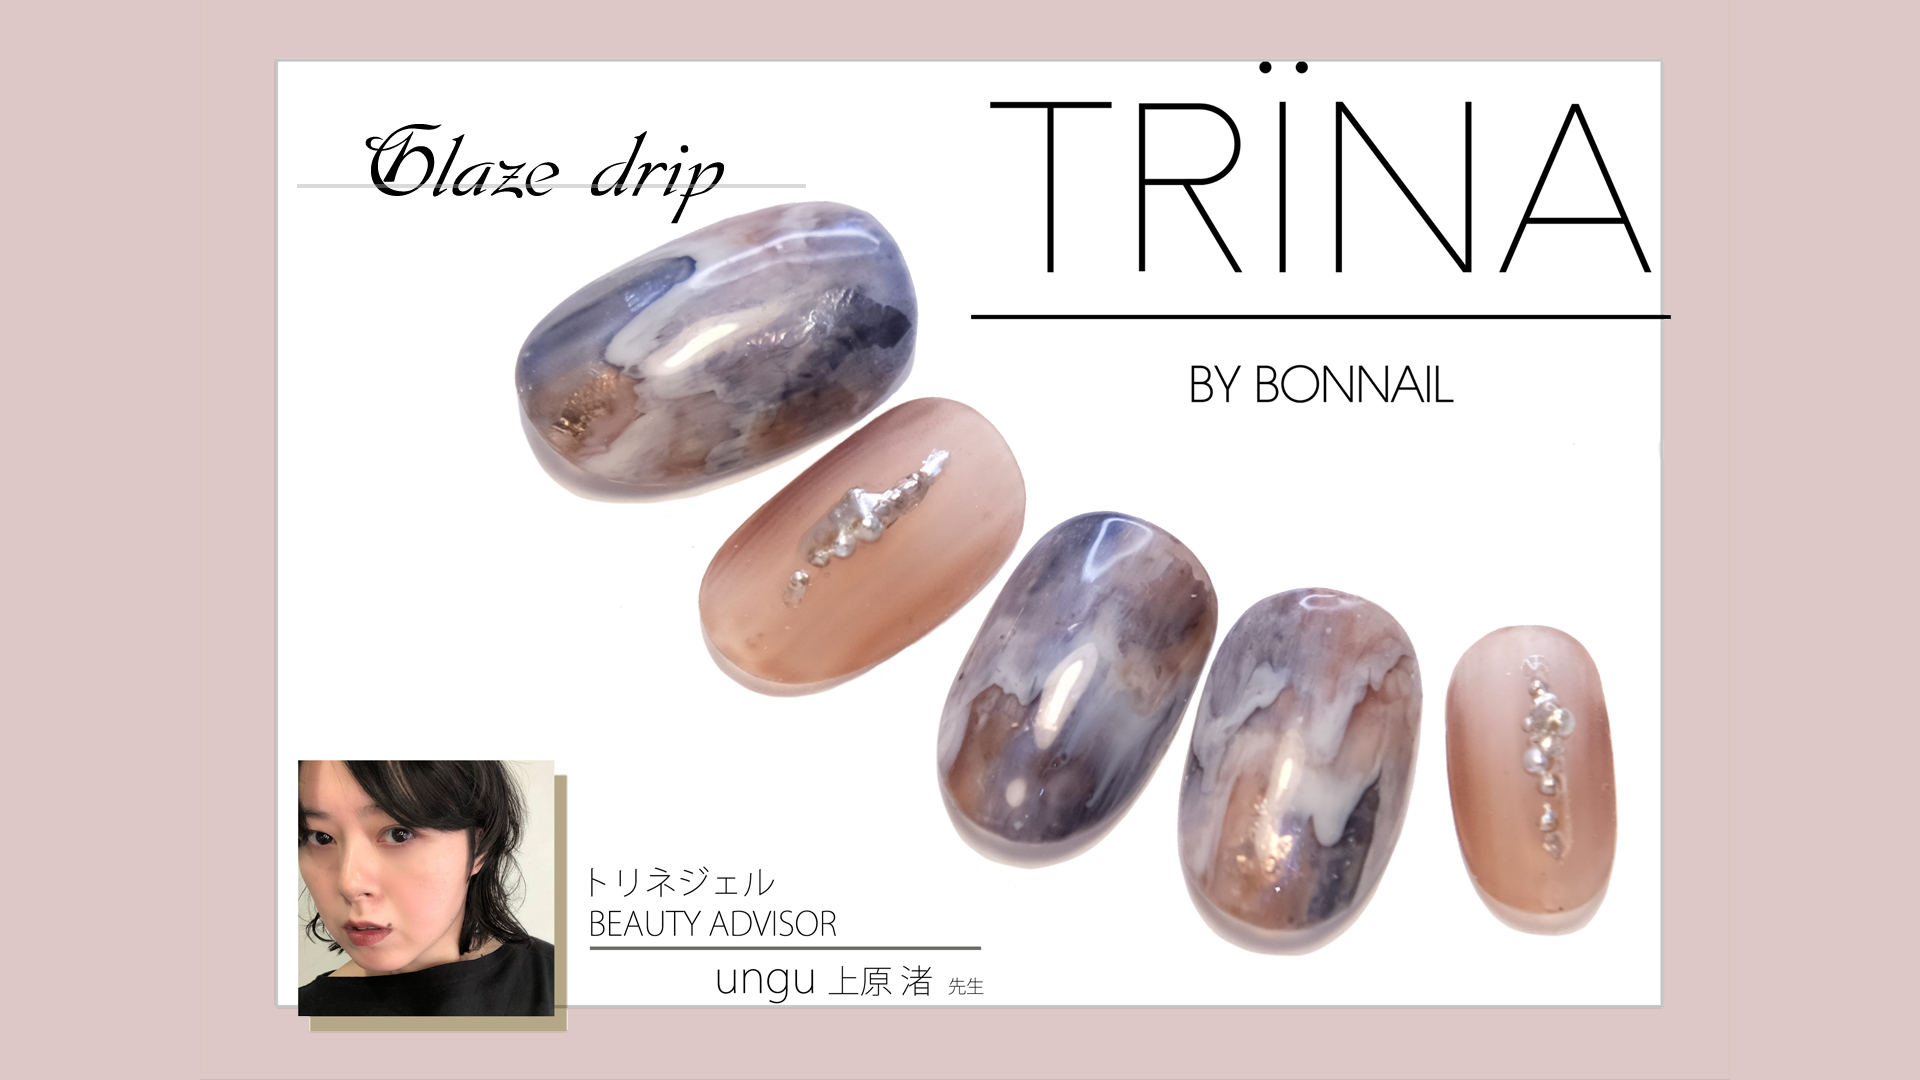 【11】株式会社TAT TRINA BEAUTY ADVISOR  ungu 上原渚先生／Glaze drip